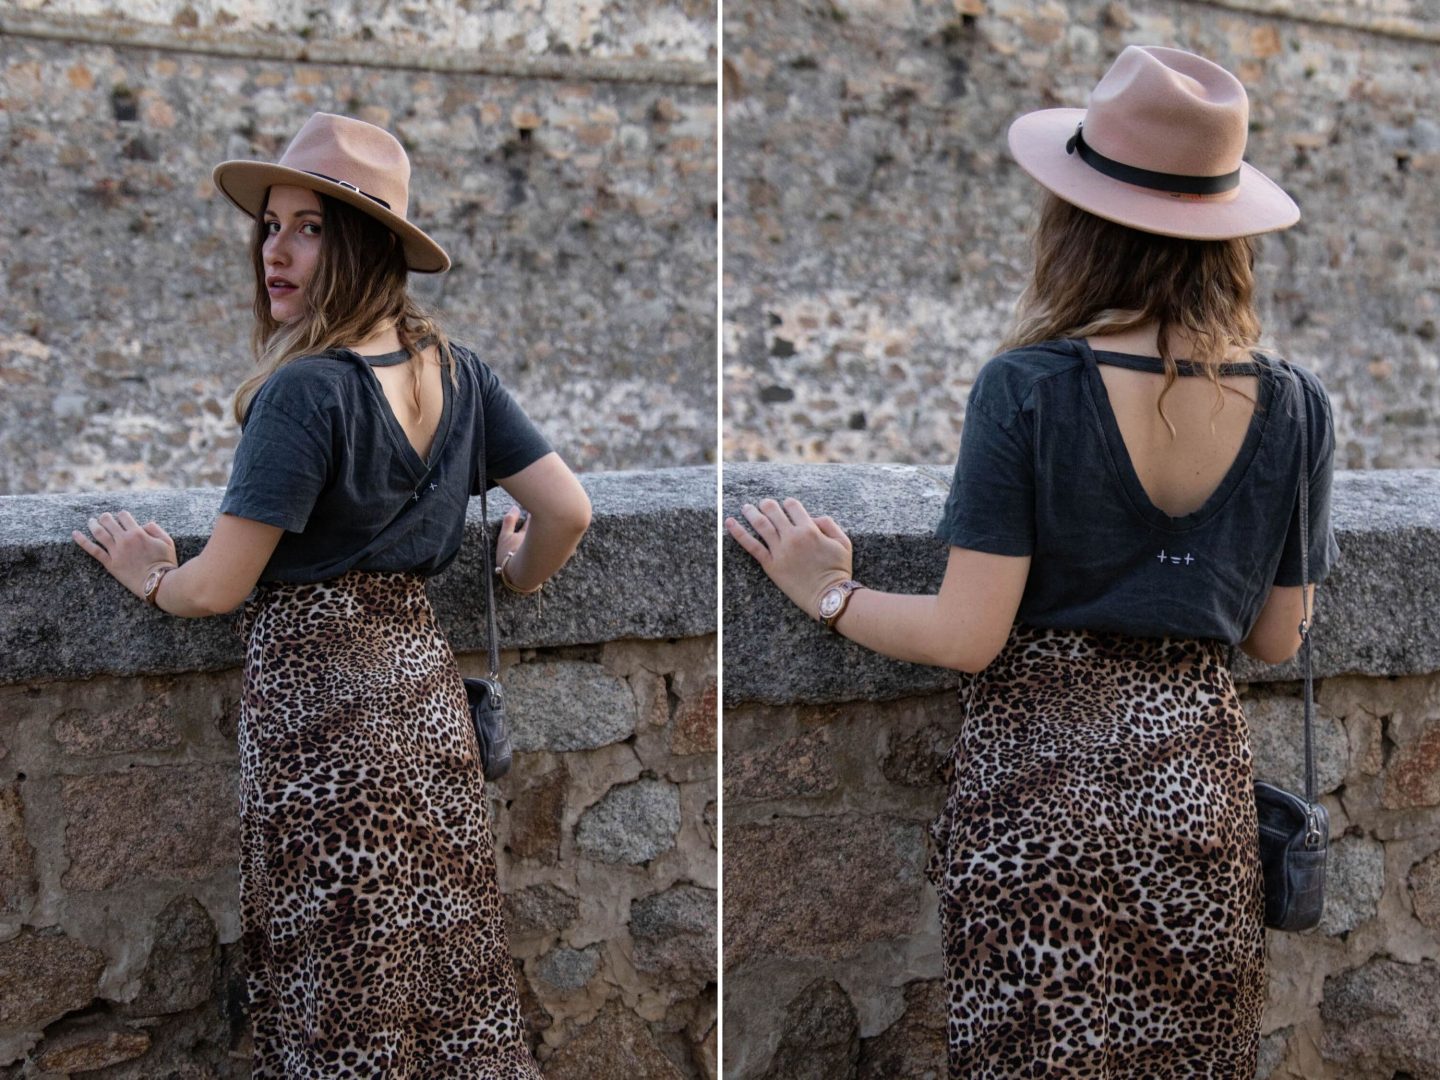 Comment porter la jupe midi léopard ? - happinesscoco.com